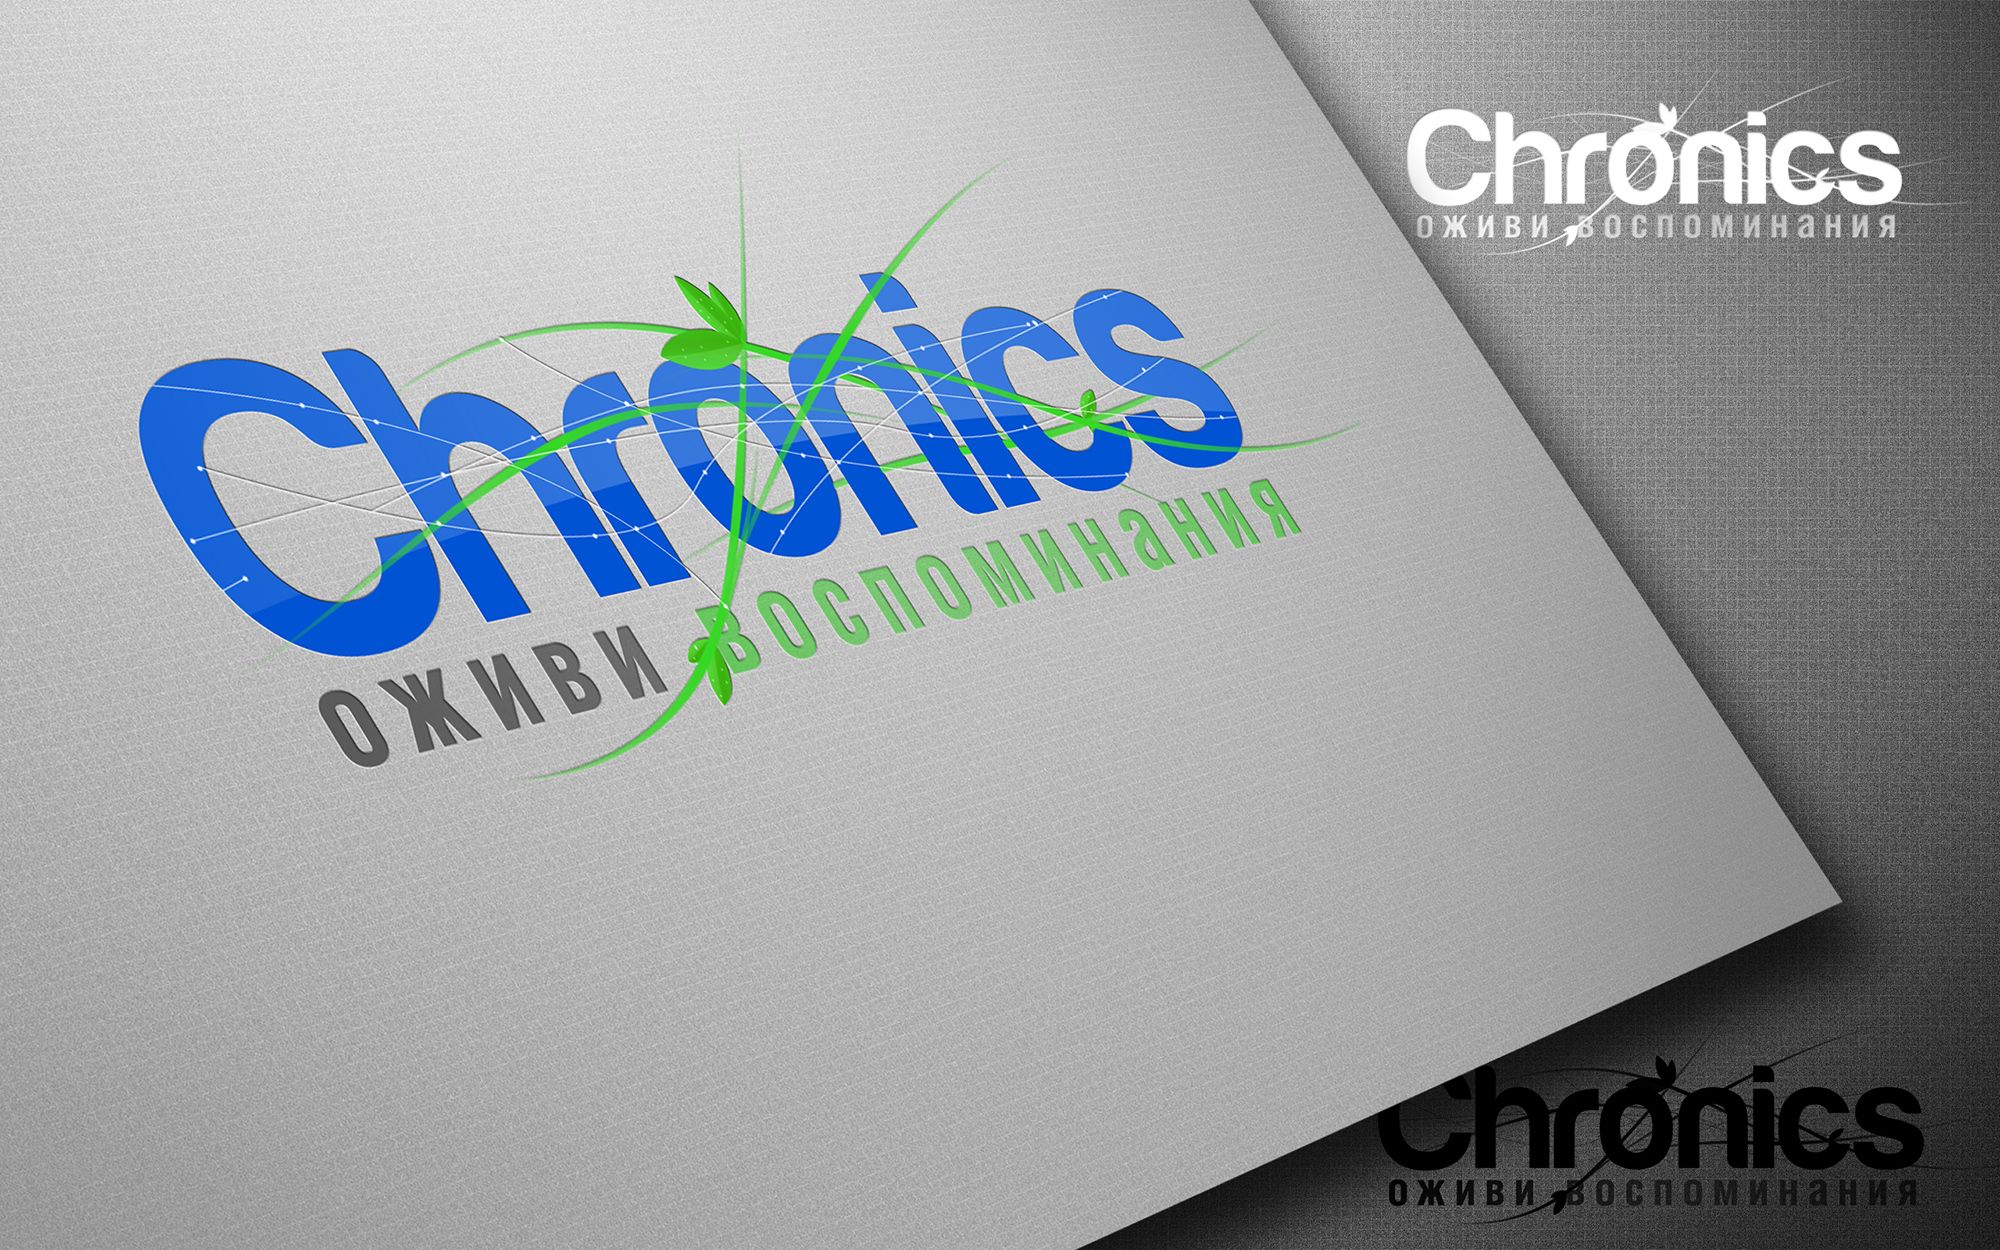 Логотип сервиса Chronics - дизайнер djmirionec1